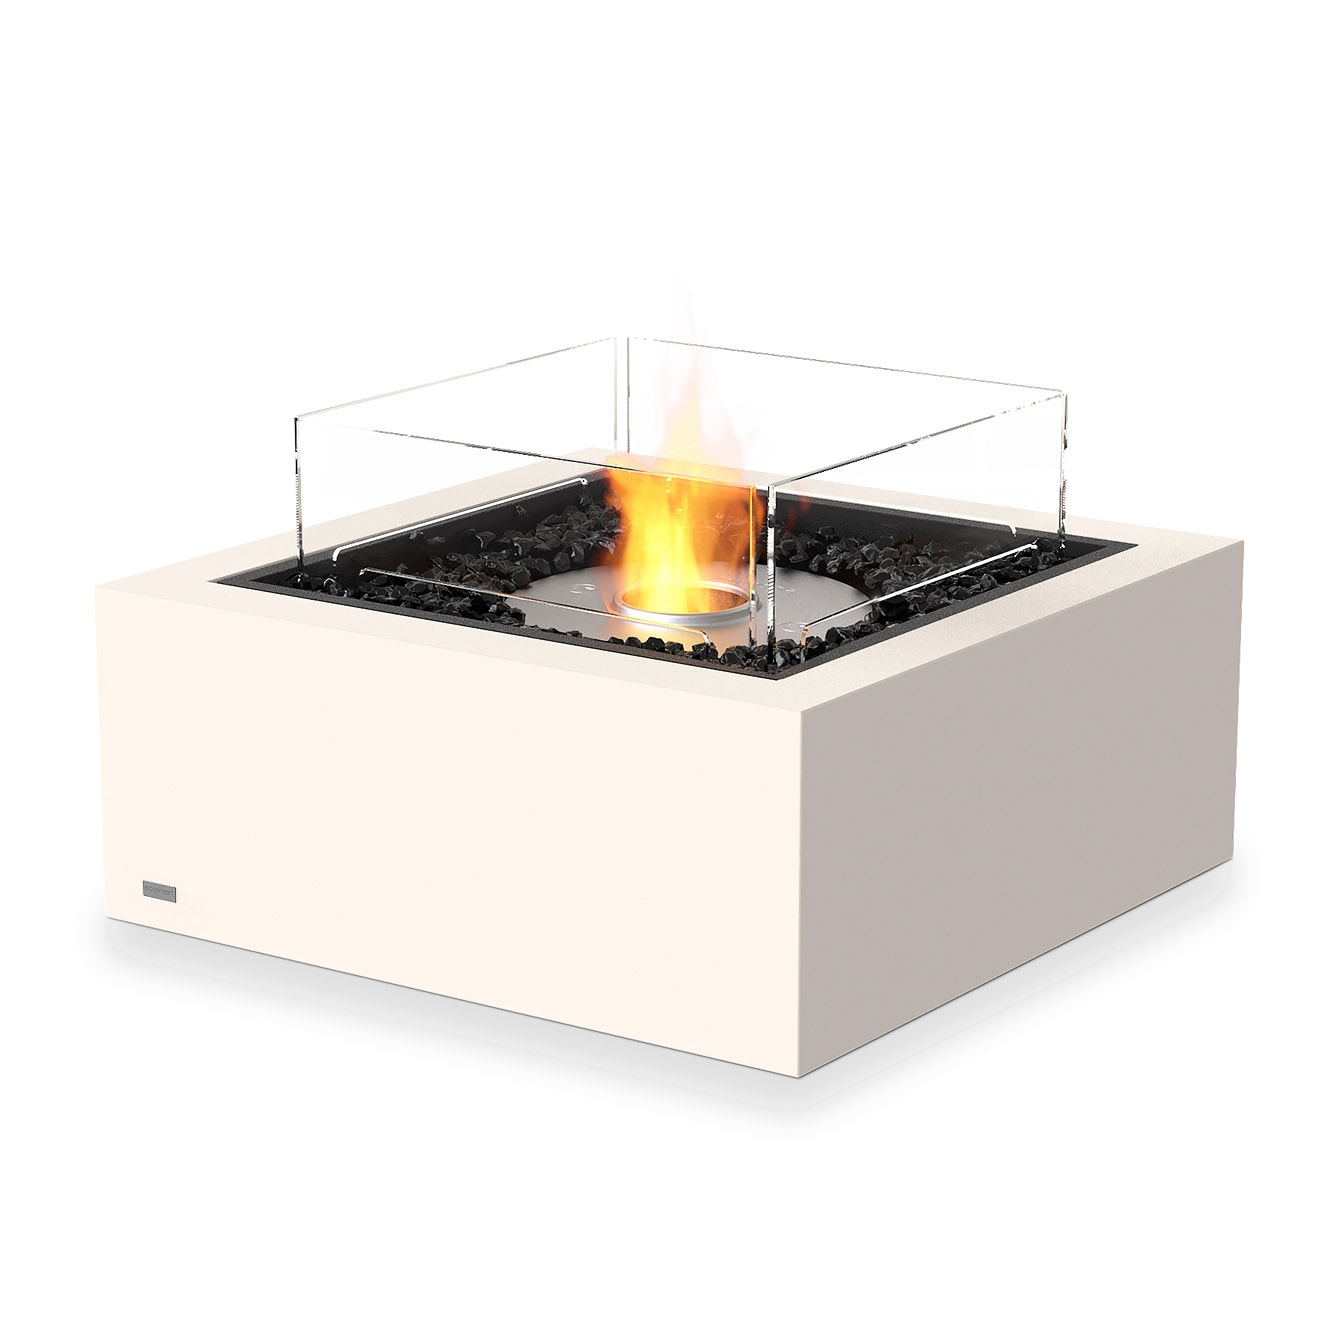 Base 30 - Exklusiver ECOSMART FIRE Feuertisch für Indoor & Outdoor | Radiamo